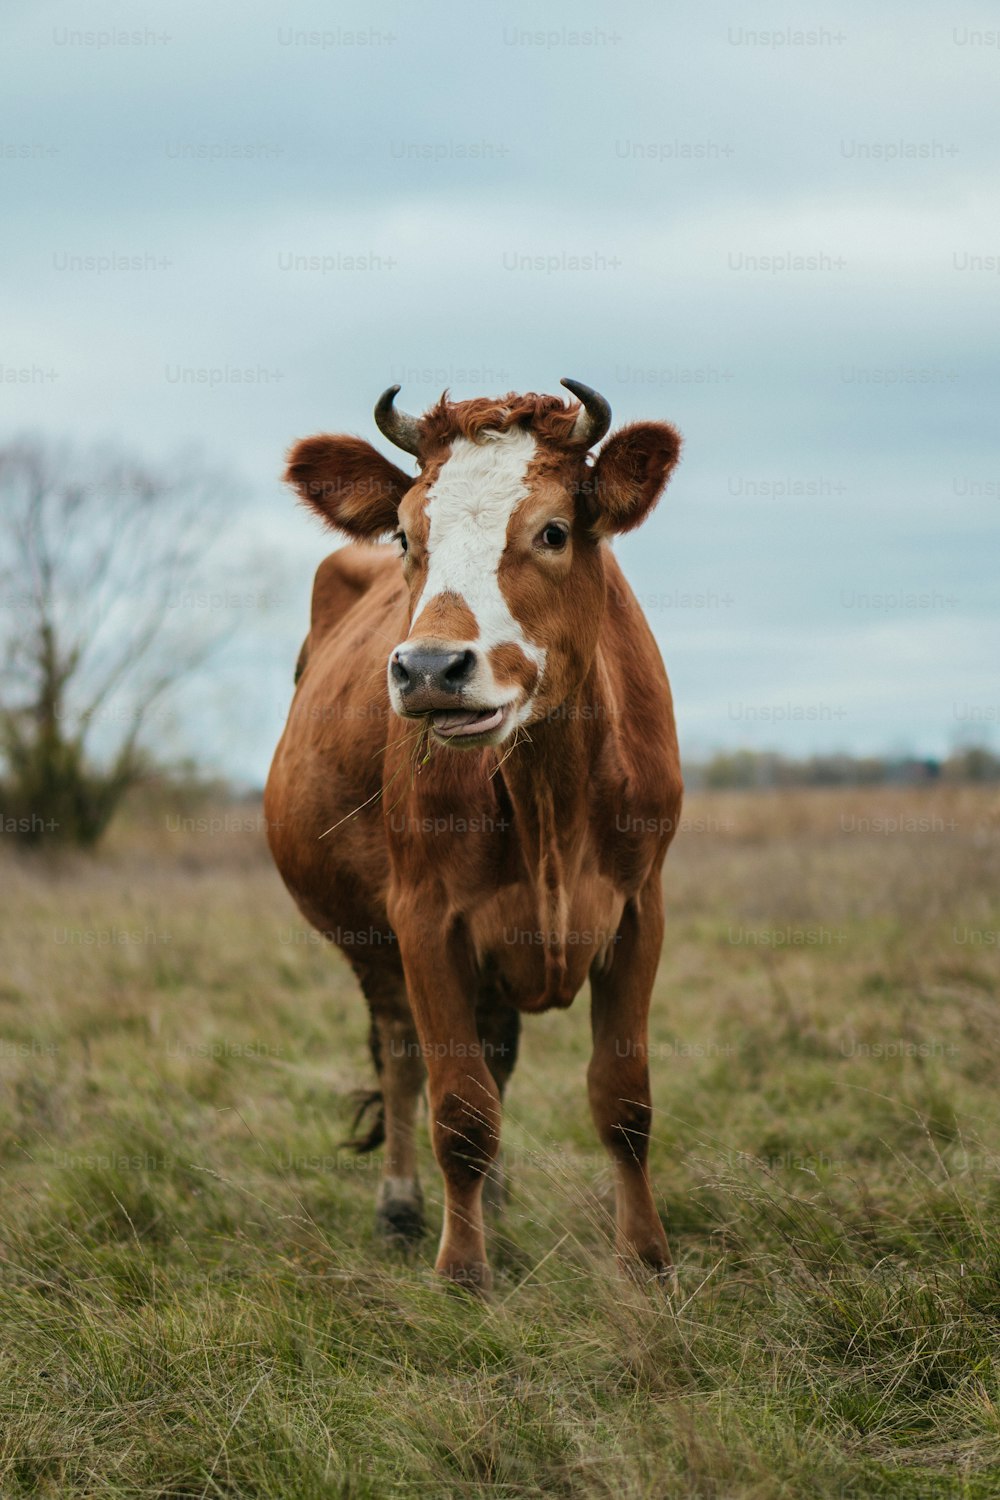 Una vaca marrón y blanca de pie sobre un campo cubierto de hierba